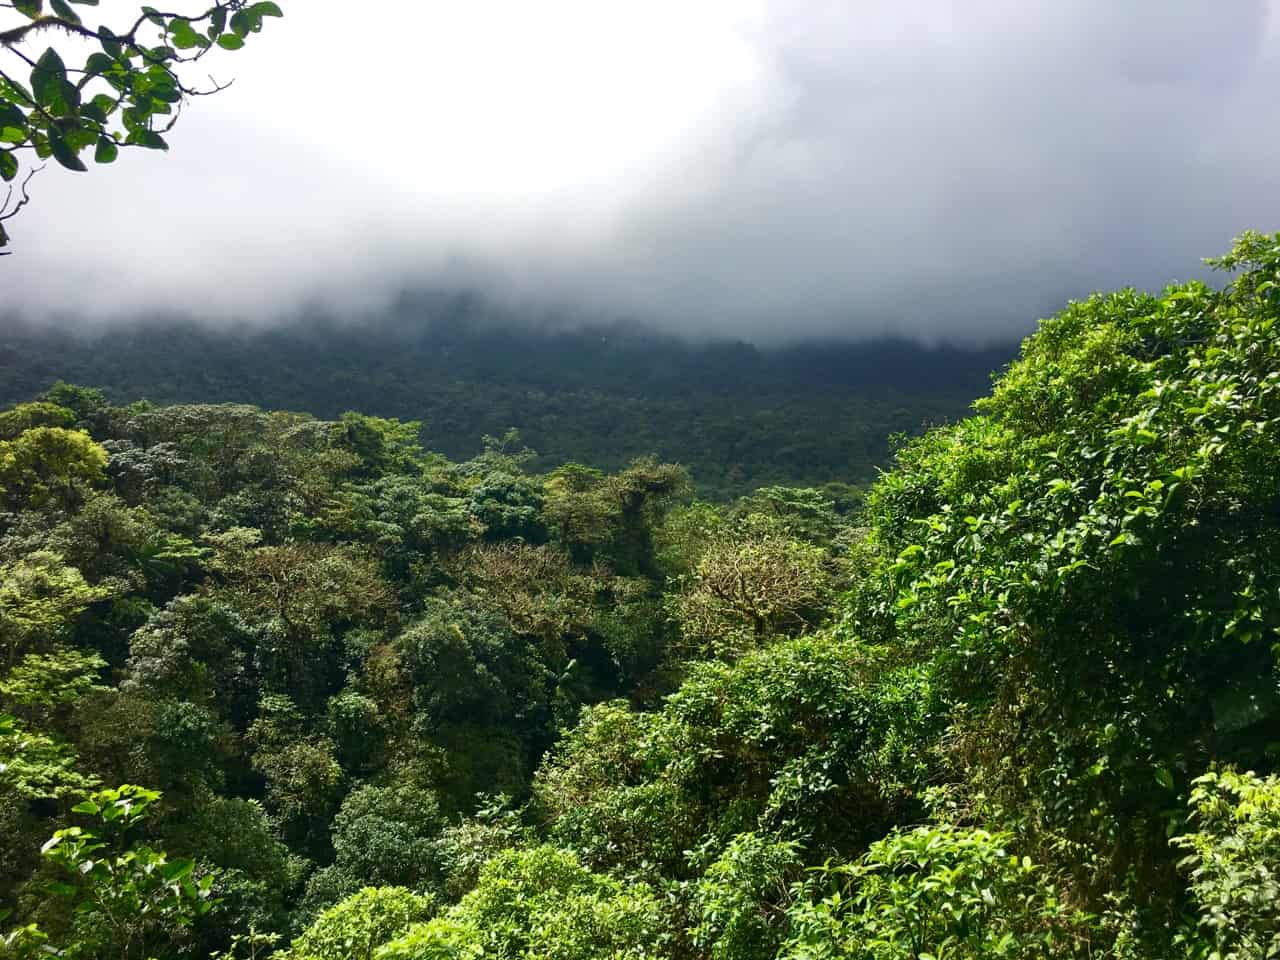  Les nuages couvrent la forêt et obscurcissent la vue du volcan Tenorio au Costa Rica.